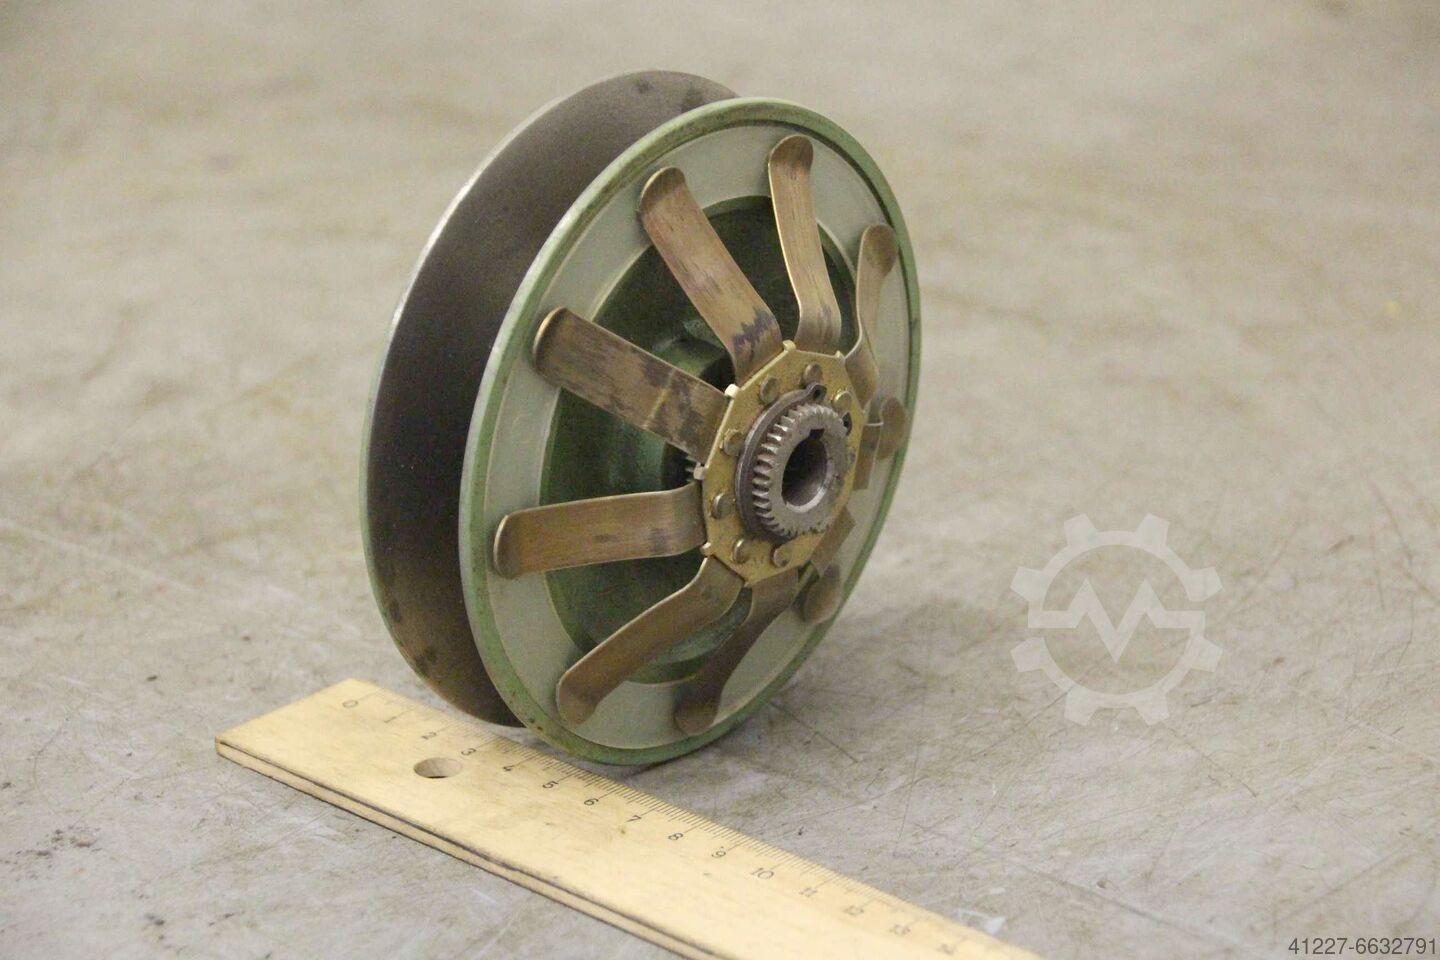 Variatorscheibe Lenze Durchmesser 120/12/11 mm - Preis: 160 € - Angebot auf   - Preis: 160 €